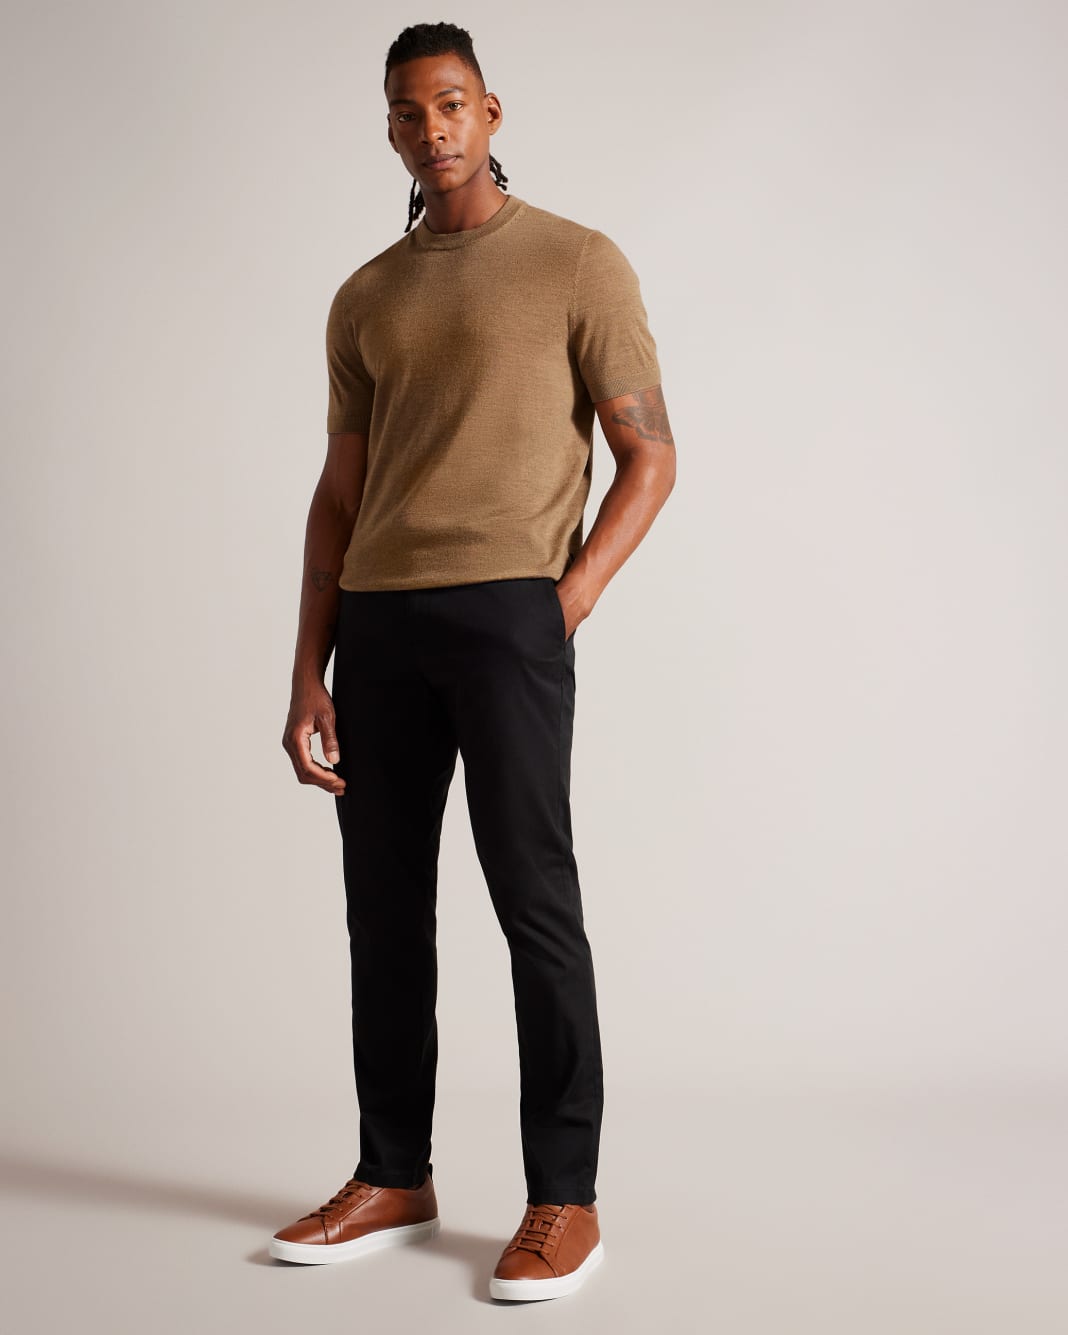 테드베이커 Tedbaker Short Sleeve Knitted T-Shirt,Dark Tan